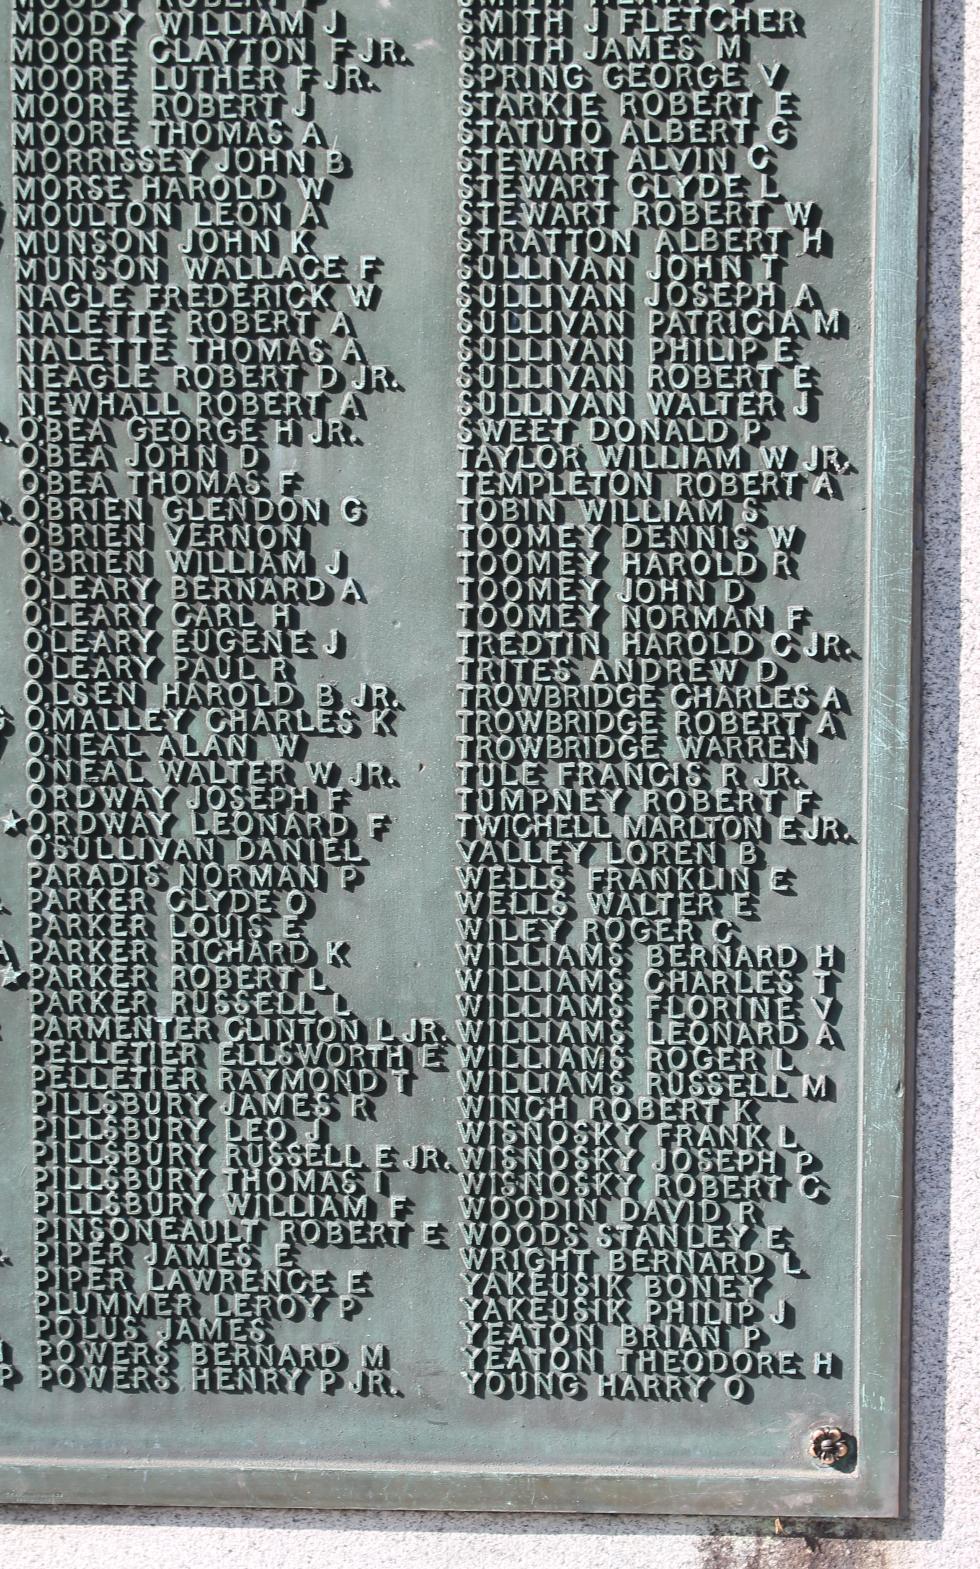 Pepperell Massachusetts World War II Veterans Memorial